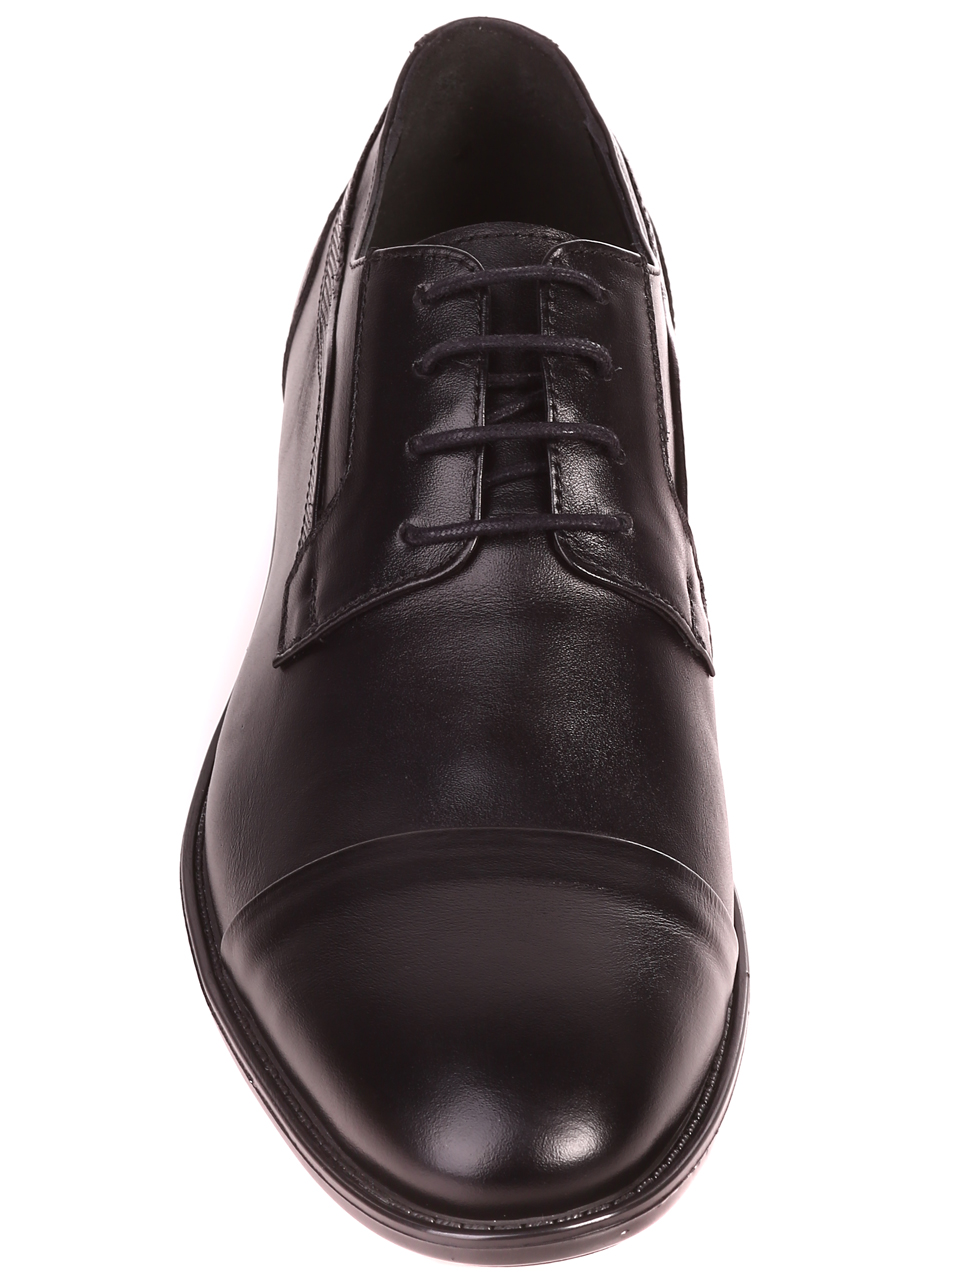 Eлегантни мъжки обувки от естесвен кожа 153-5847 black S